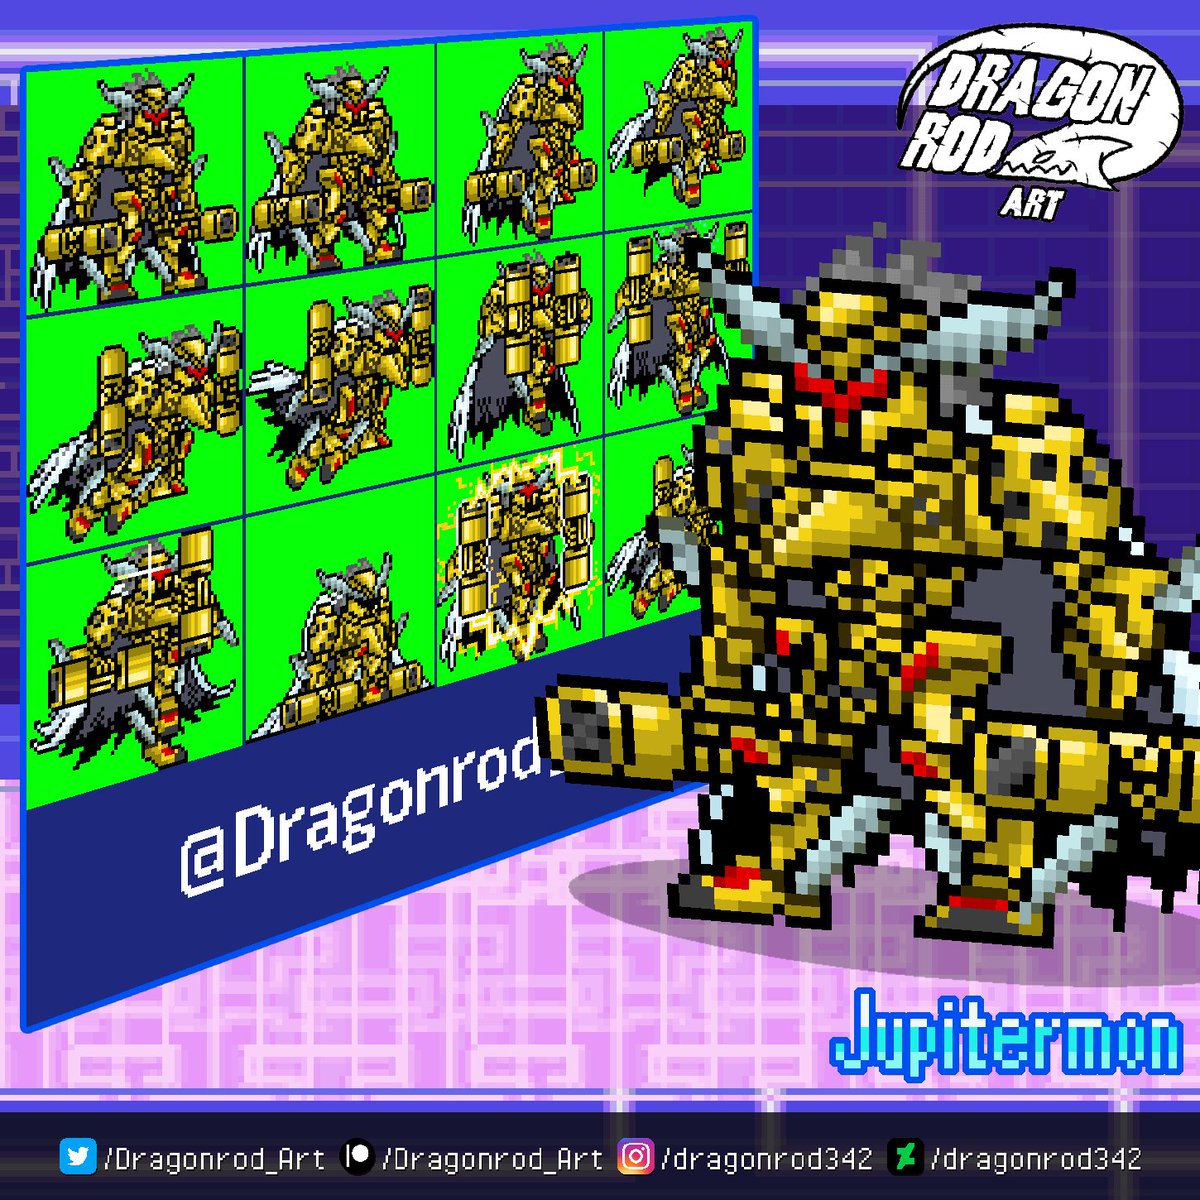 A diversão do Digimon original novamente! Lançamento de Digimon Masters  30/08 na América do Sul - Portal Comunique-se